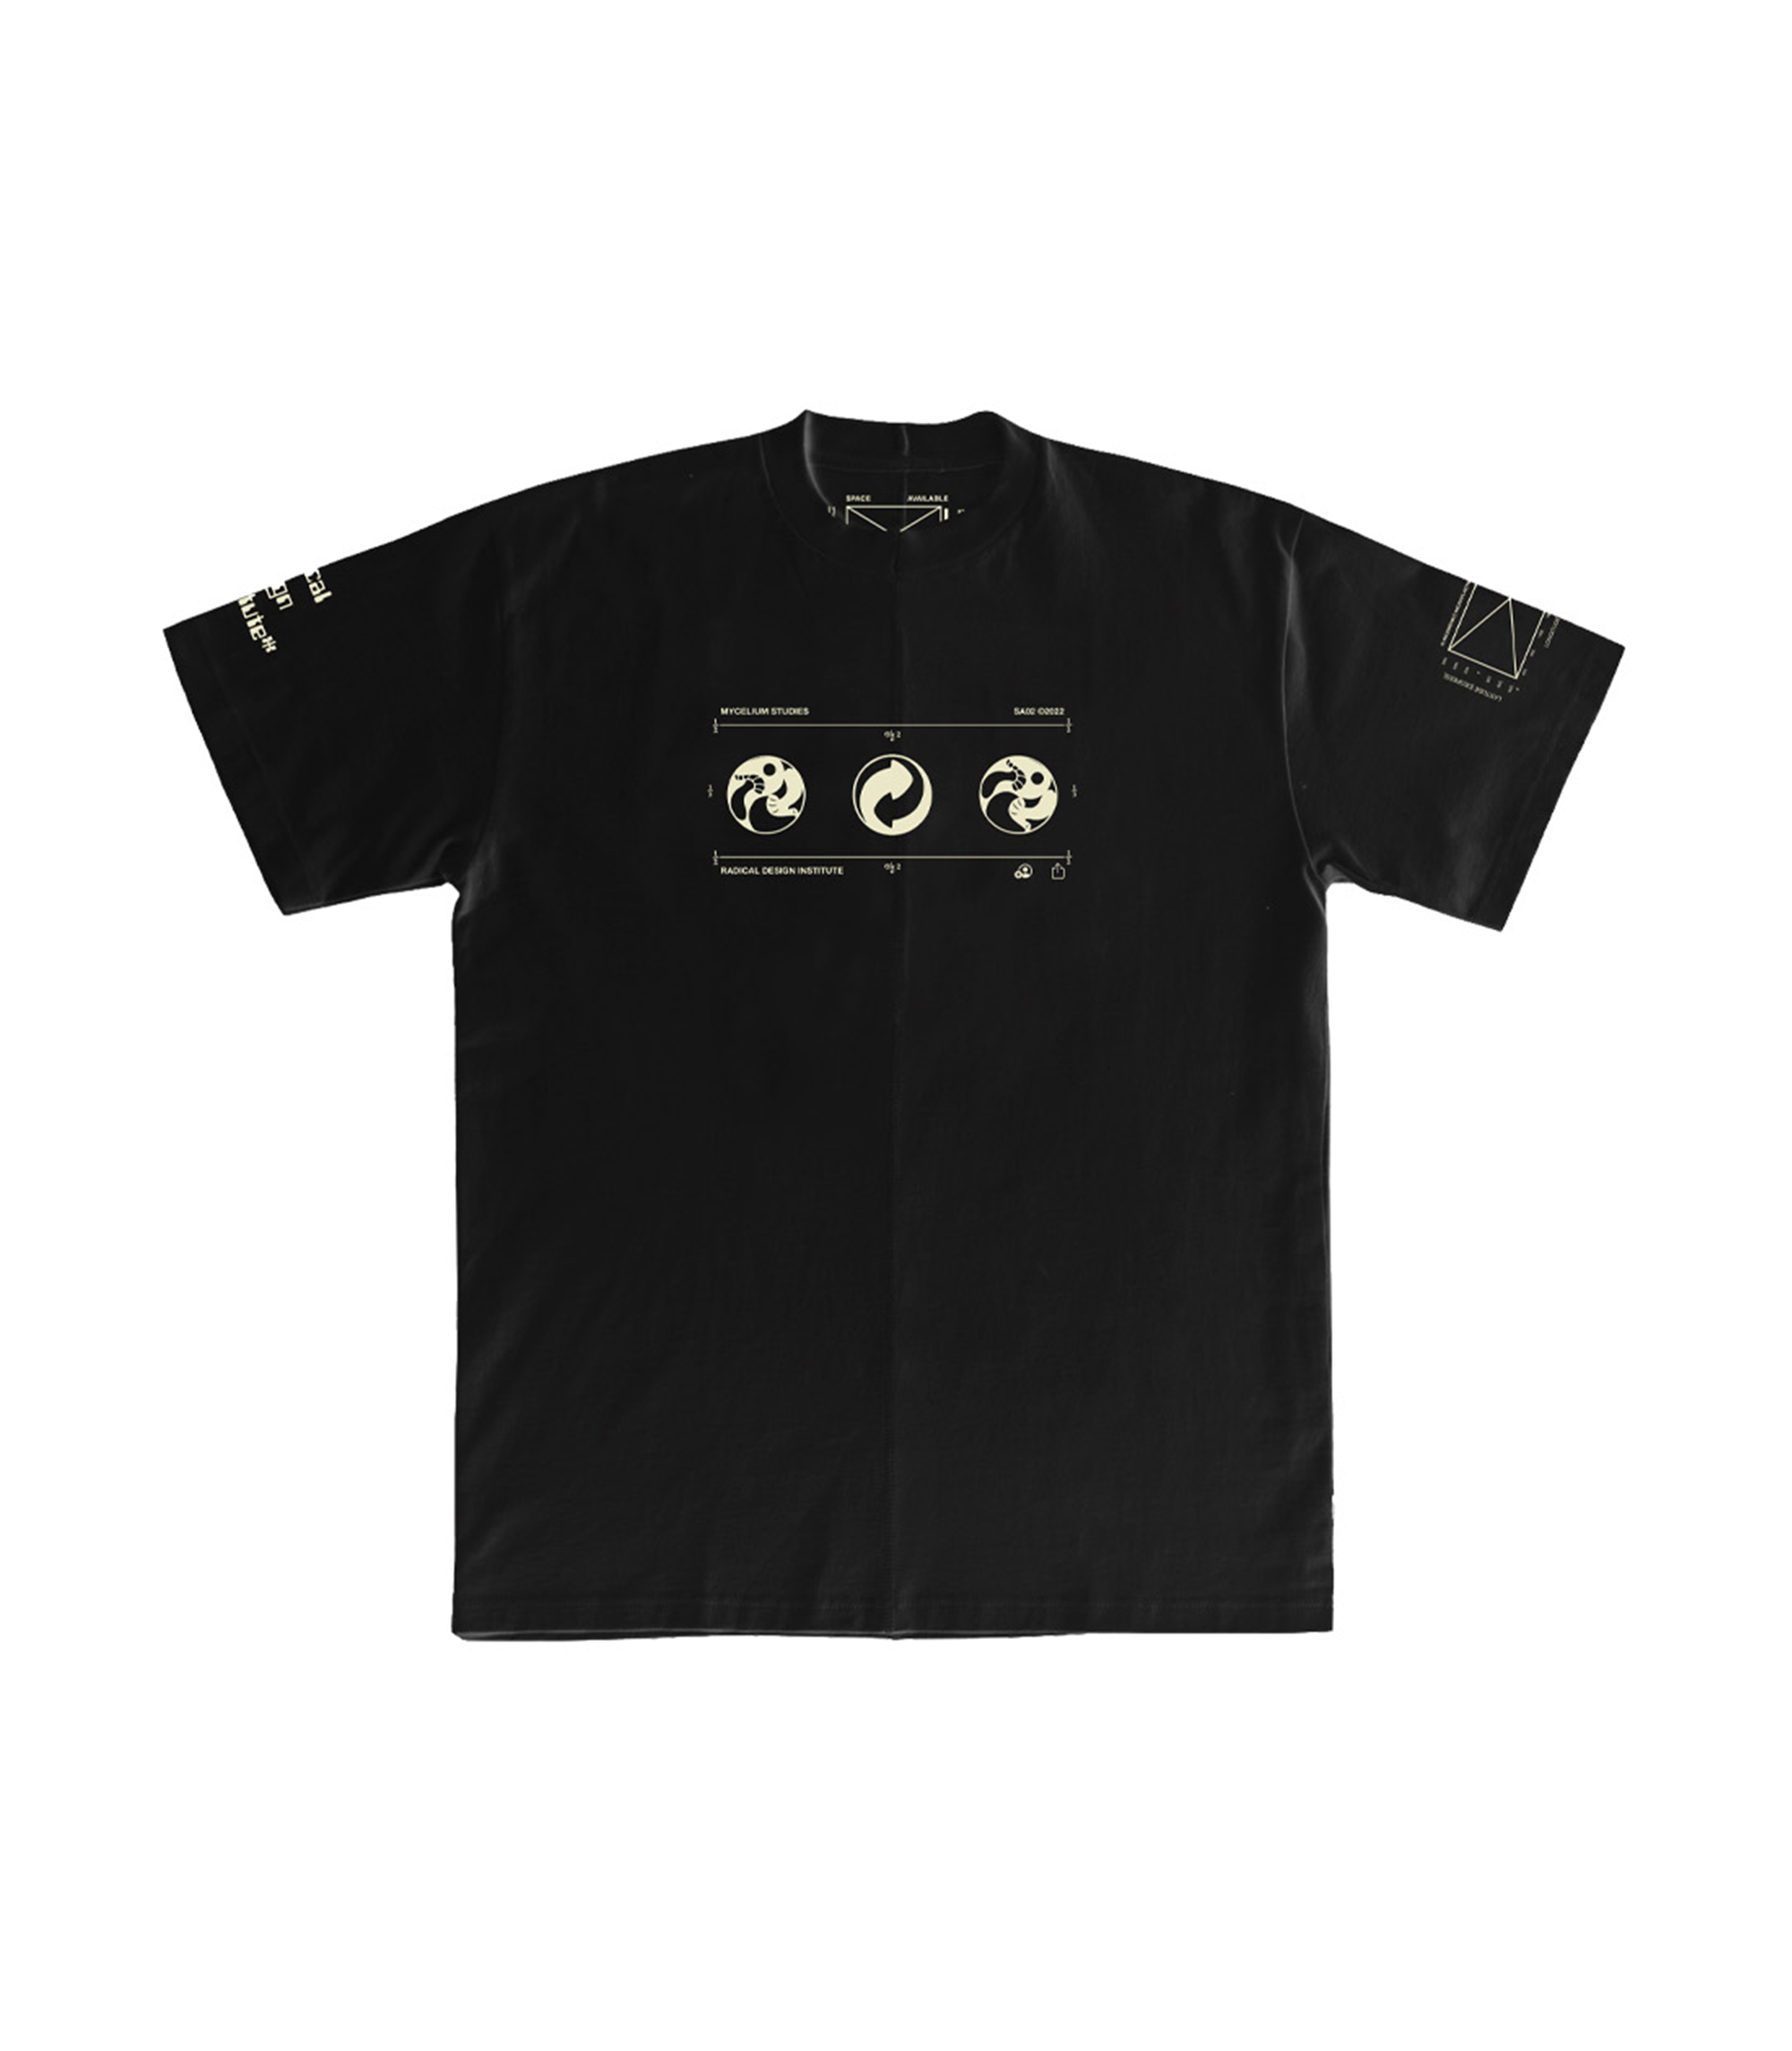 Upcycled Case Study T-shirt - Black